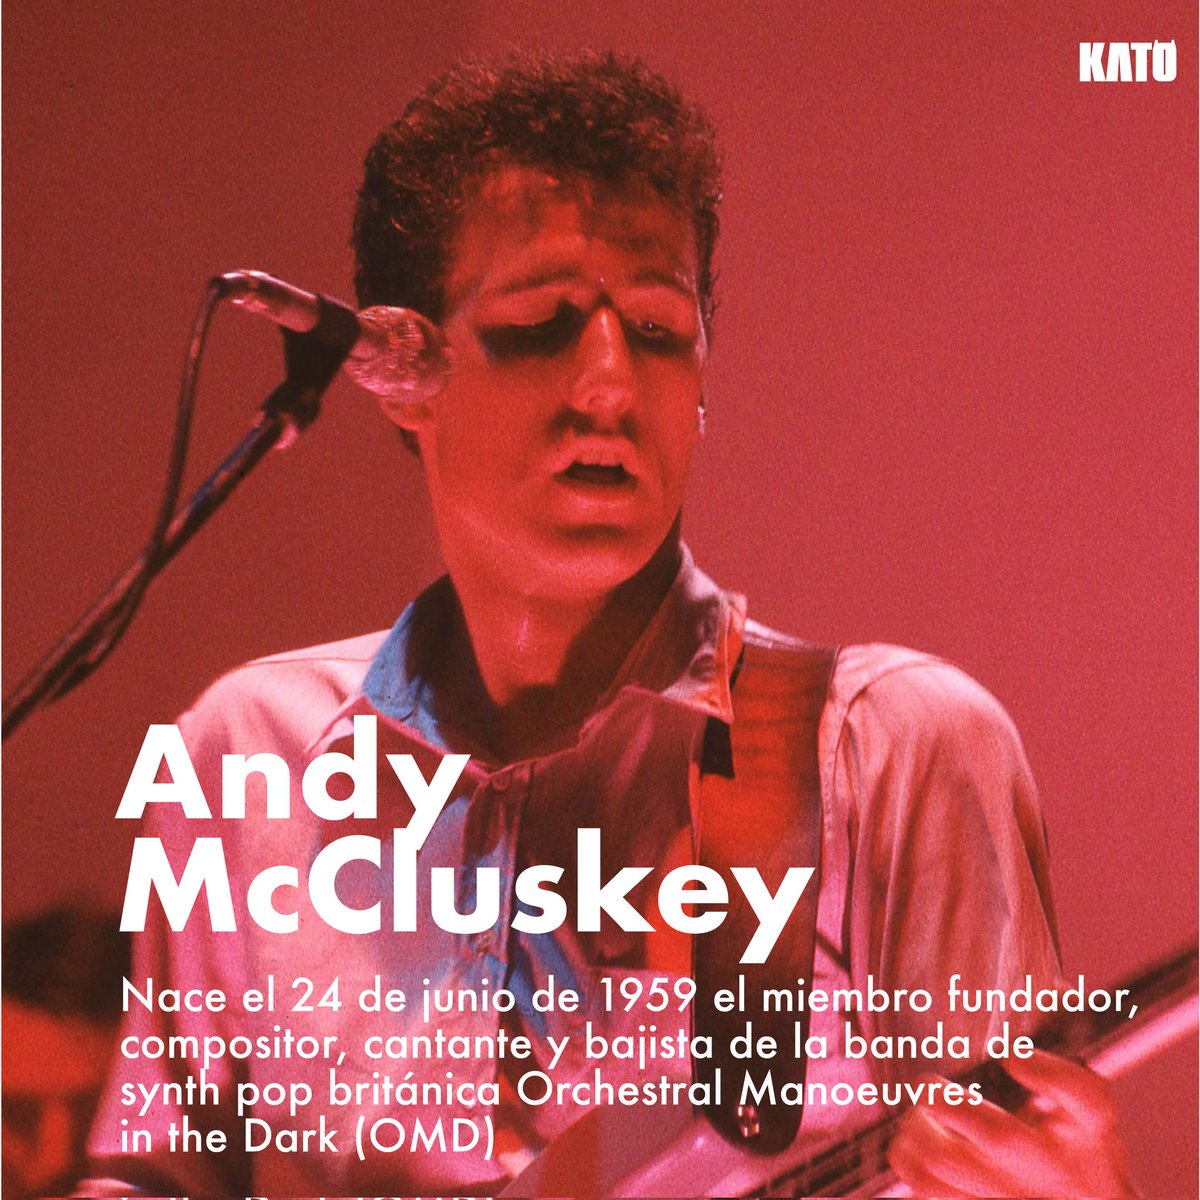 'Sister Ray is on TV' el día de hoy también festejamos al gran Andy McCluskey vocalista y fundador de @omdhq otra de nuestras favoritas de nuestra playlist de synthpop ❣️❣️❣️
#AndyMcCluskey
#OMD #orchestralmanoeuvresinthedark